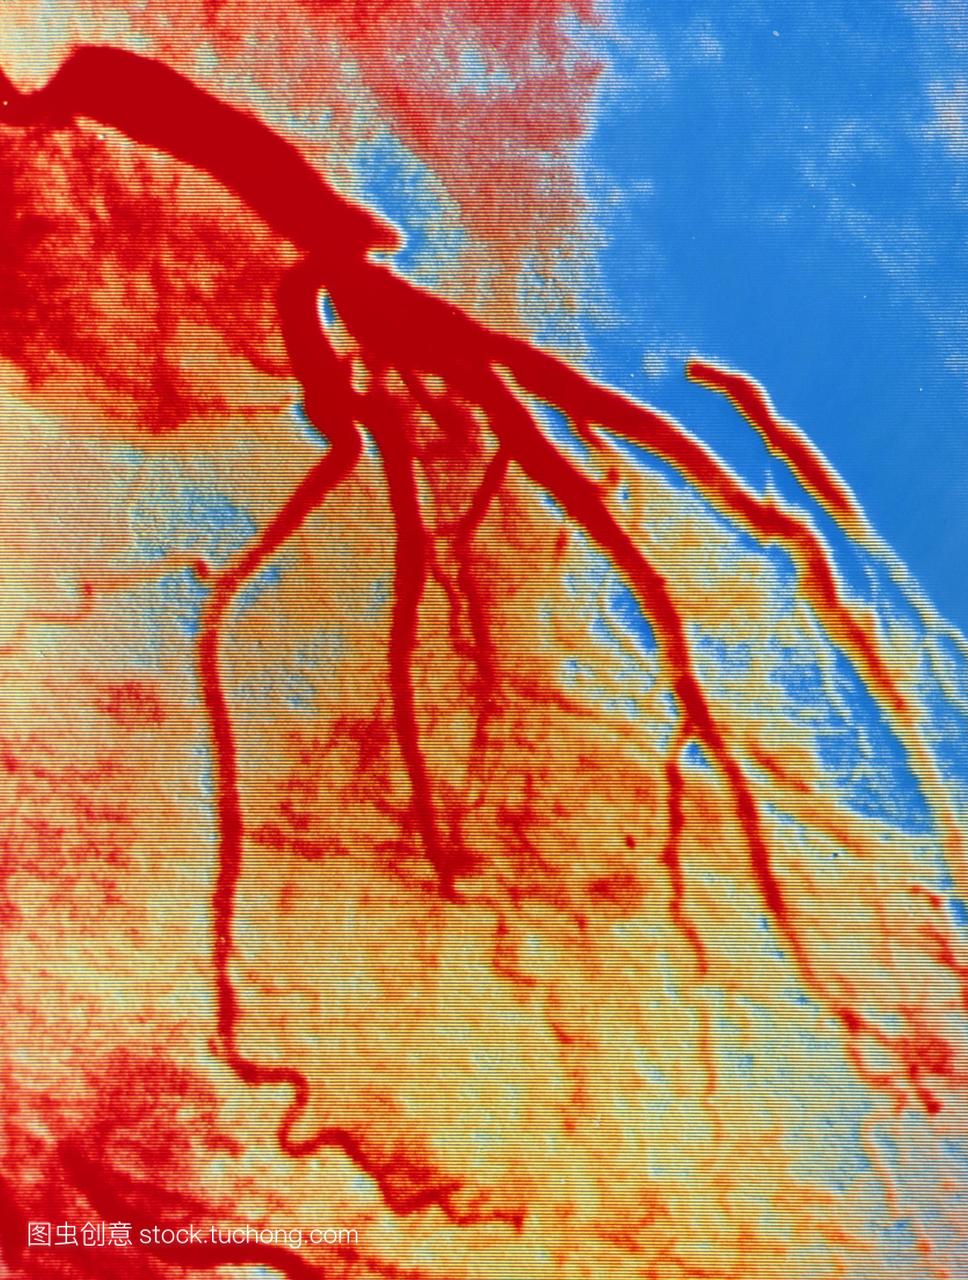 成人心脏的假彩色血管图动脉图显示在左前降l